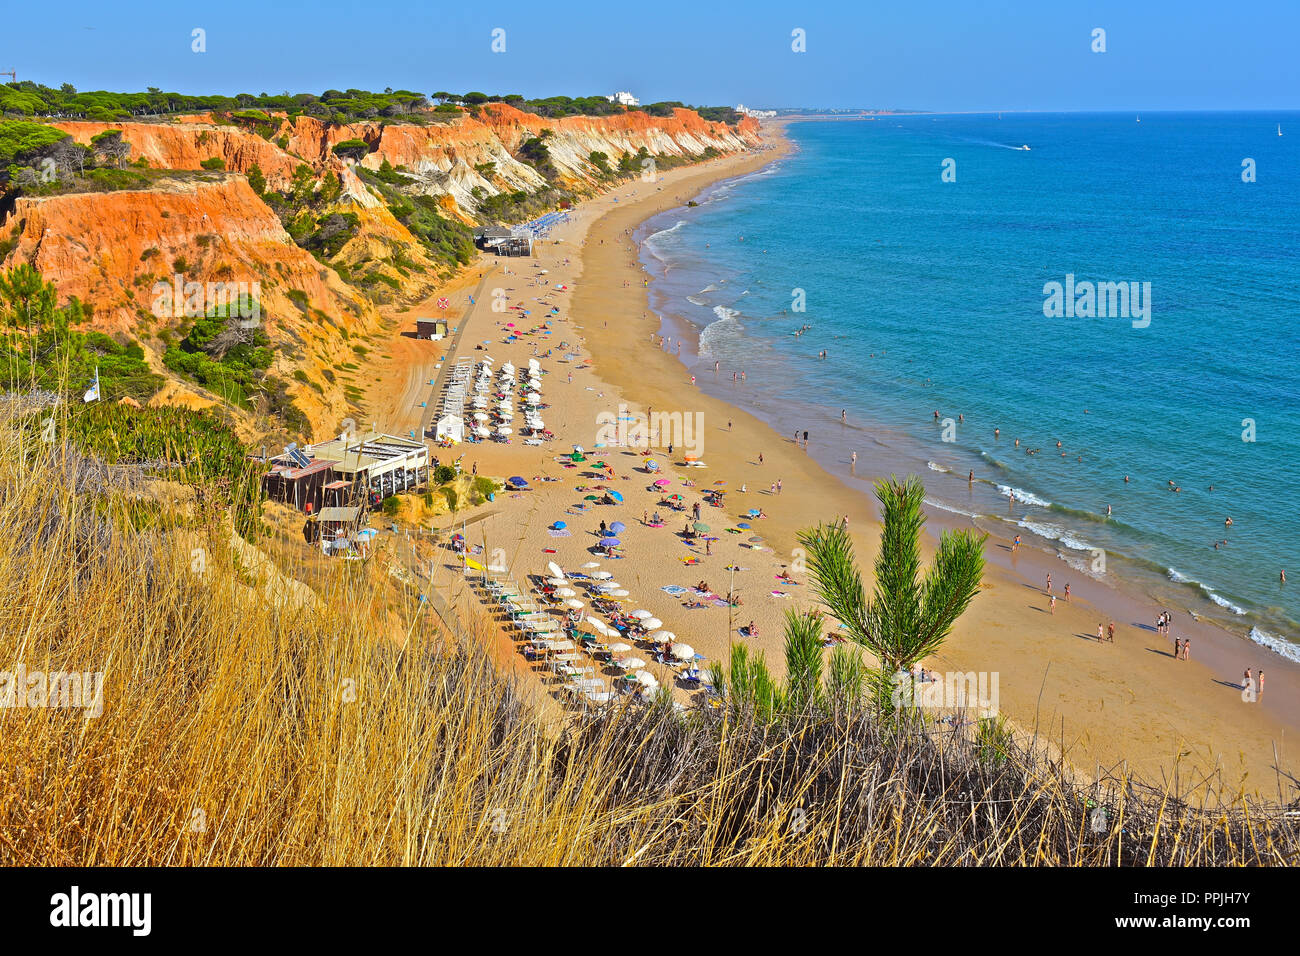 La merveilleuse plage de sable doré de Praia de Falésia s'étend de six kilomètres de Vilamoura à Olhos d'Agua, dans la région de l'Algarve du Portugal. Banque D'Images